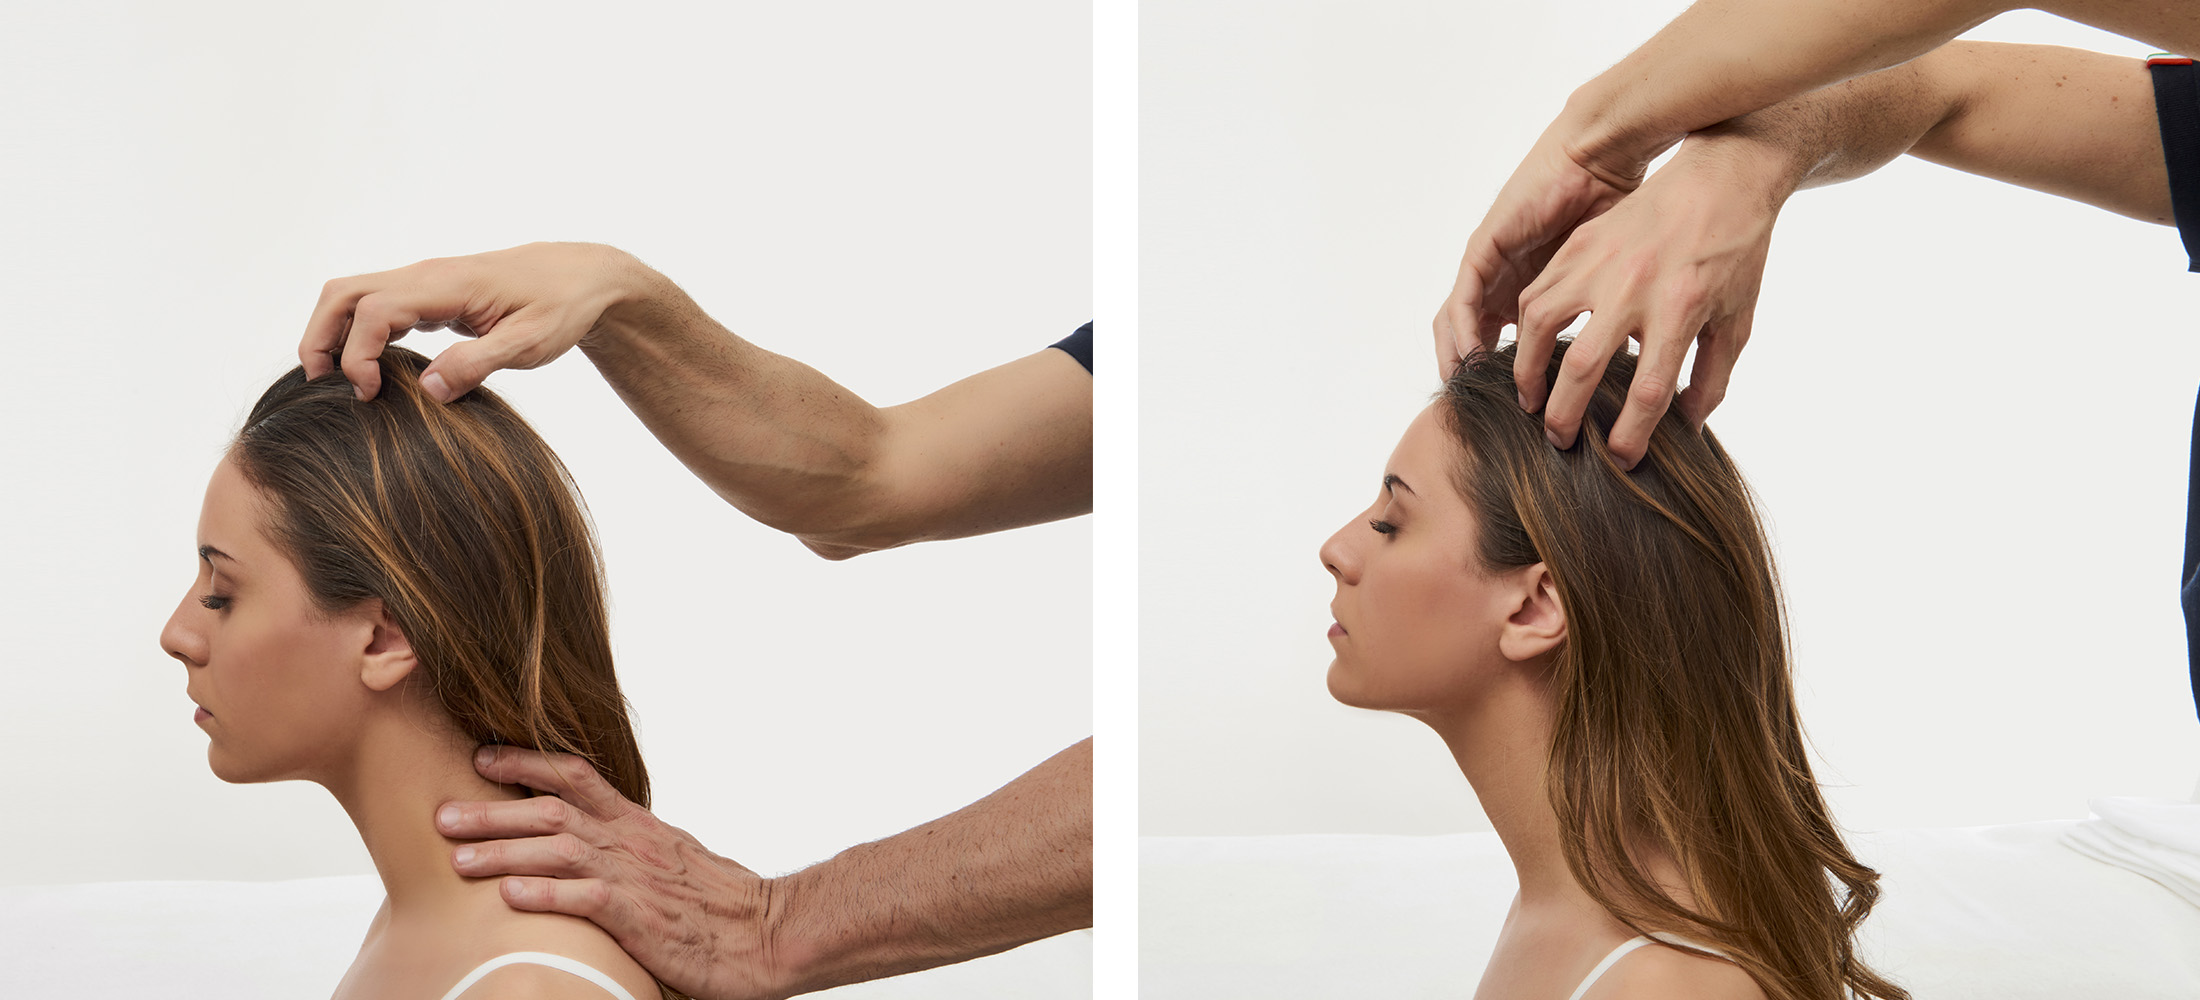 corso online massaggio per parrucchieri